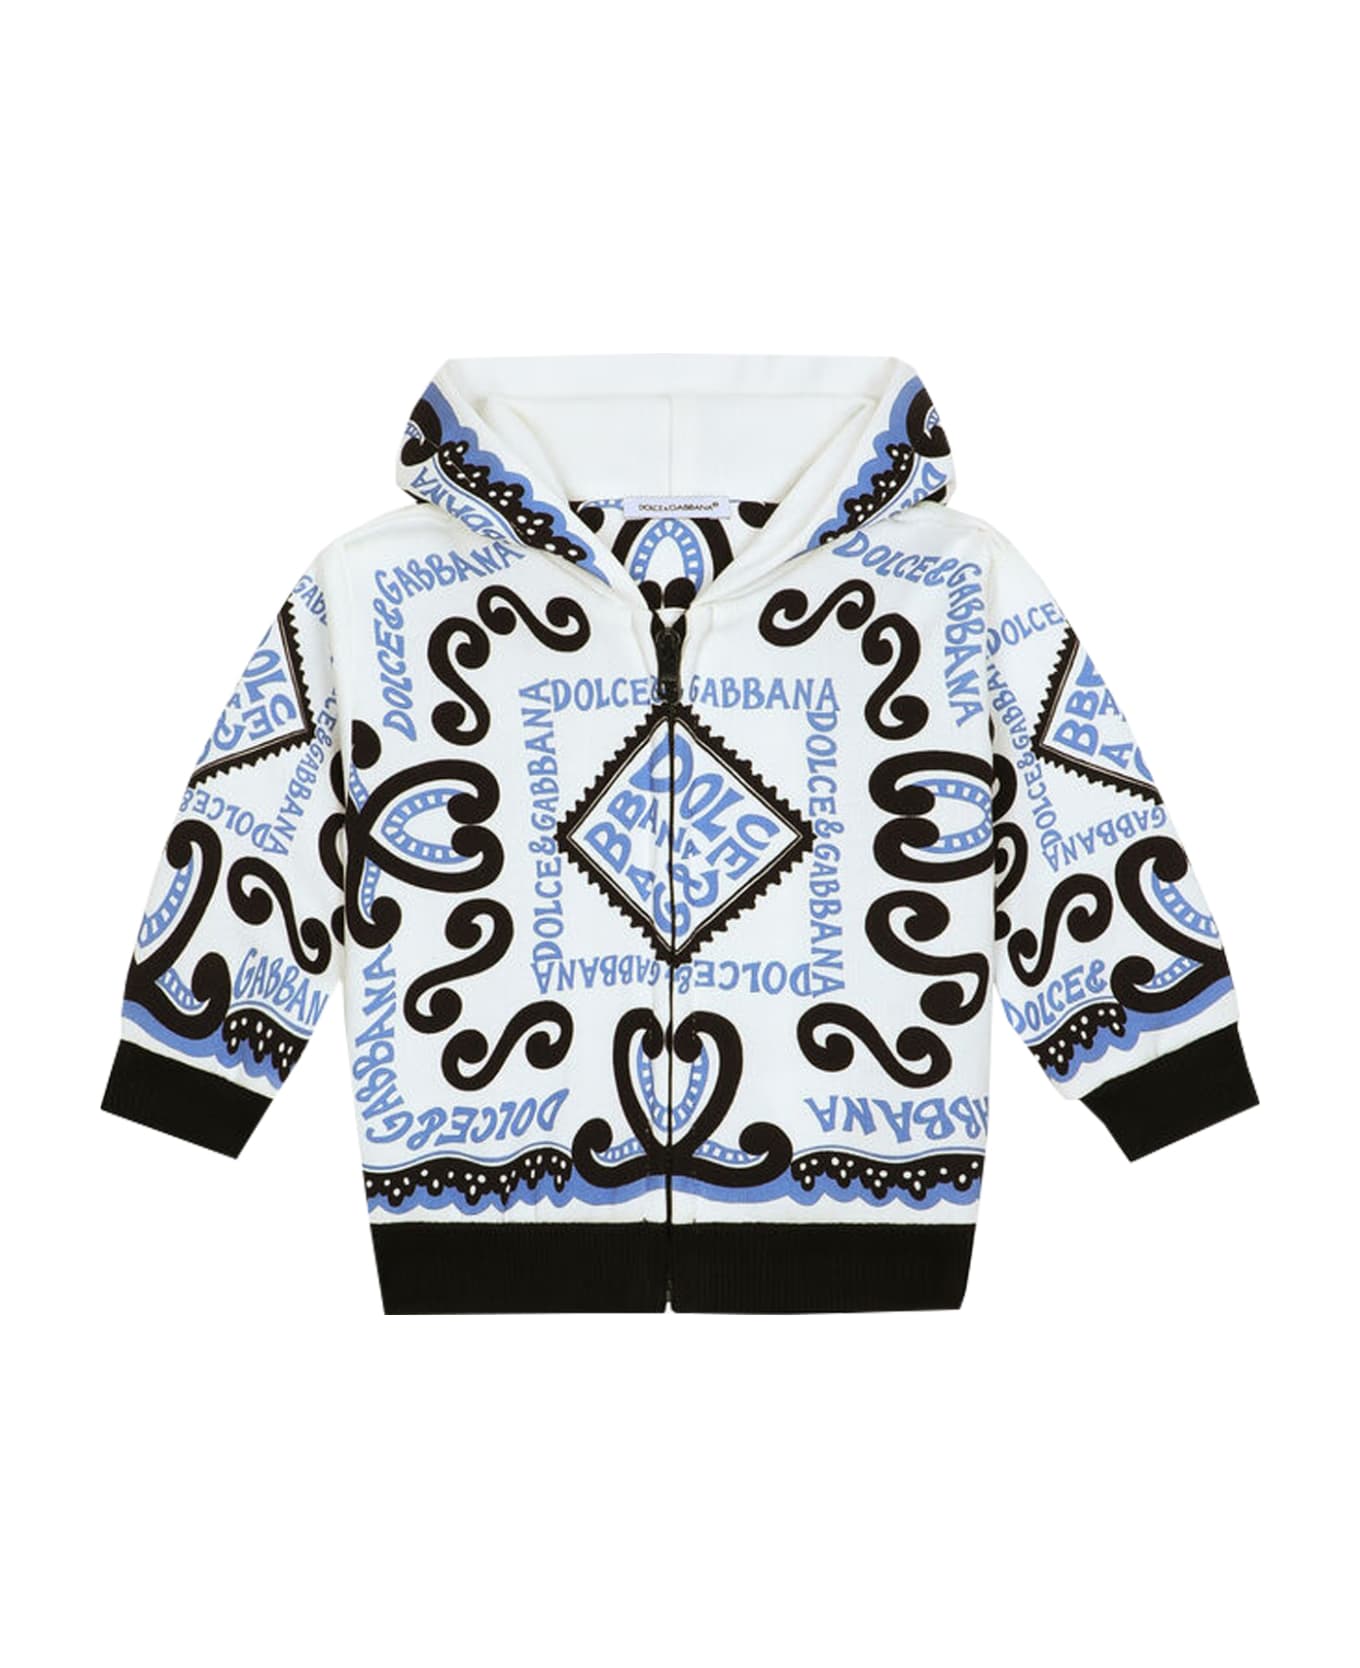 Dolce & Gabbana Zip-up Sweatshirt With Navy Print Hood - Multicolor